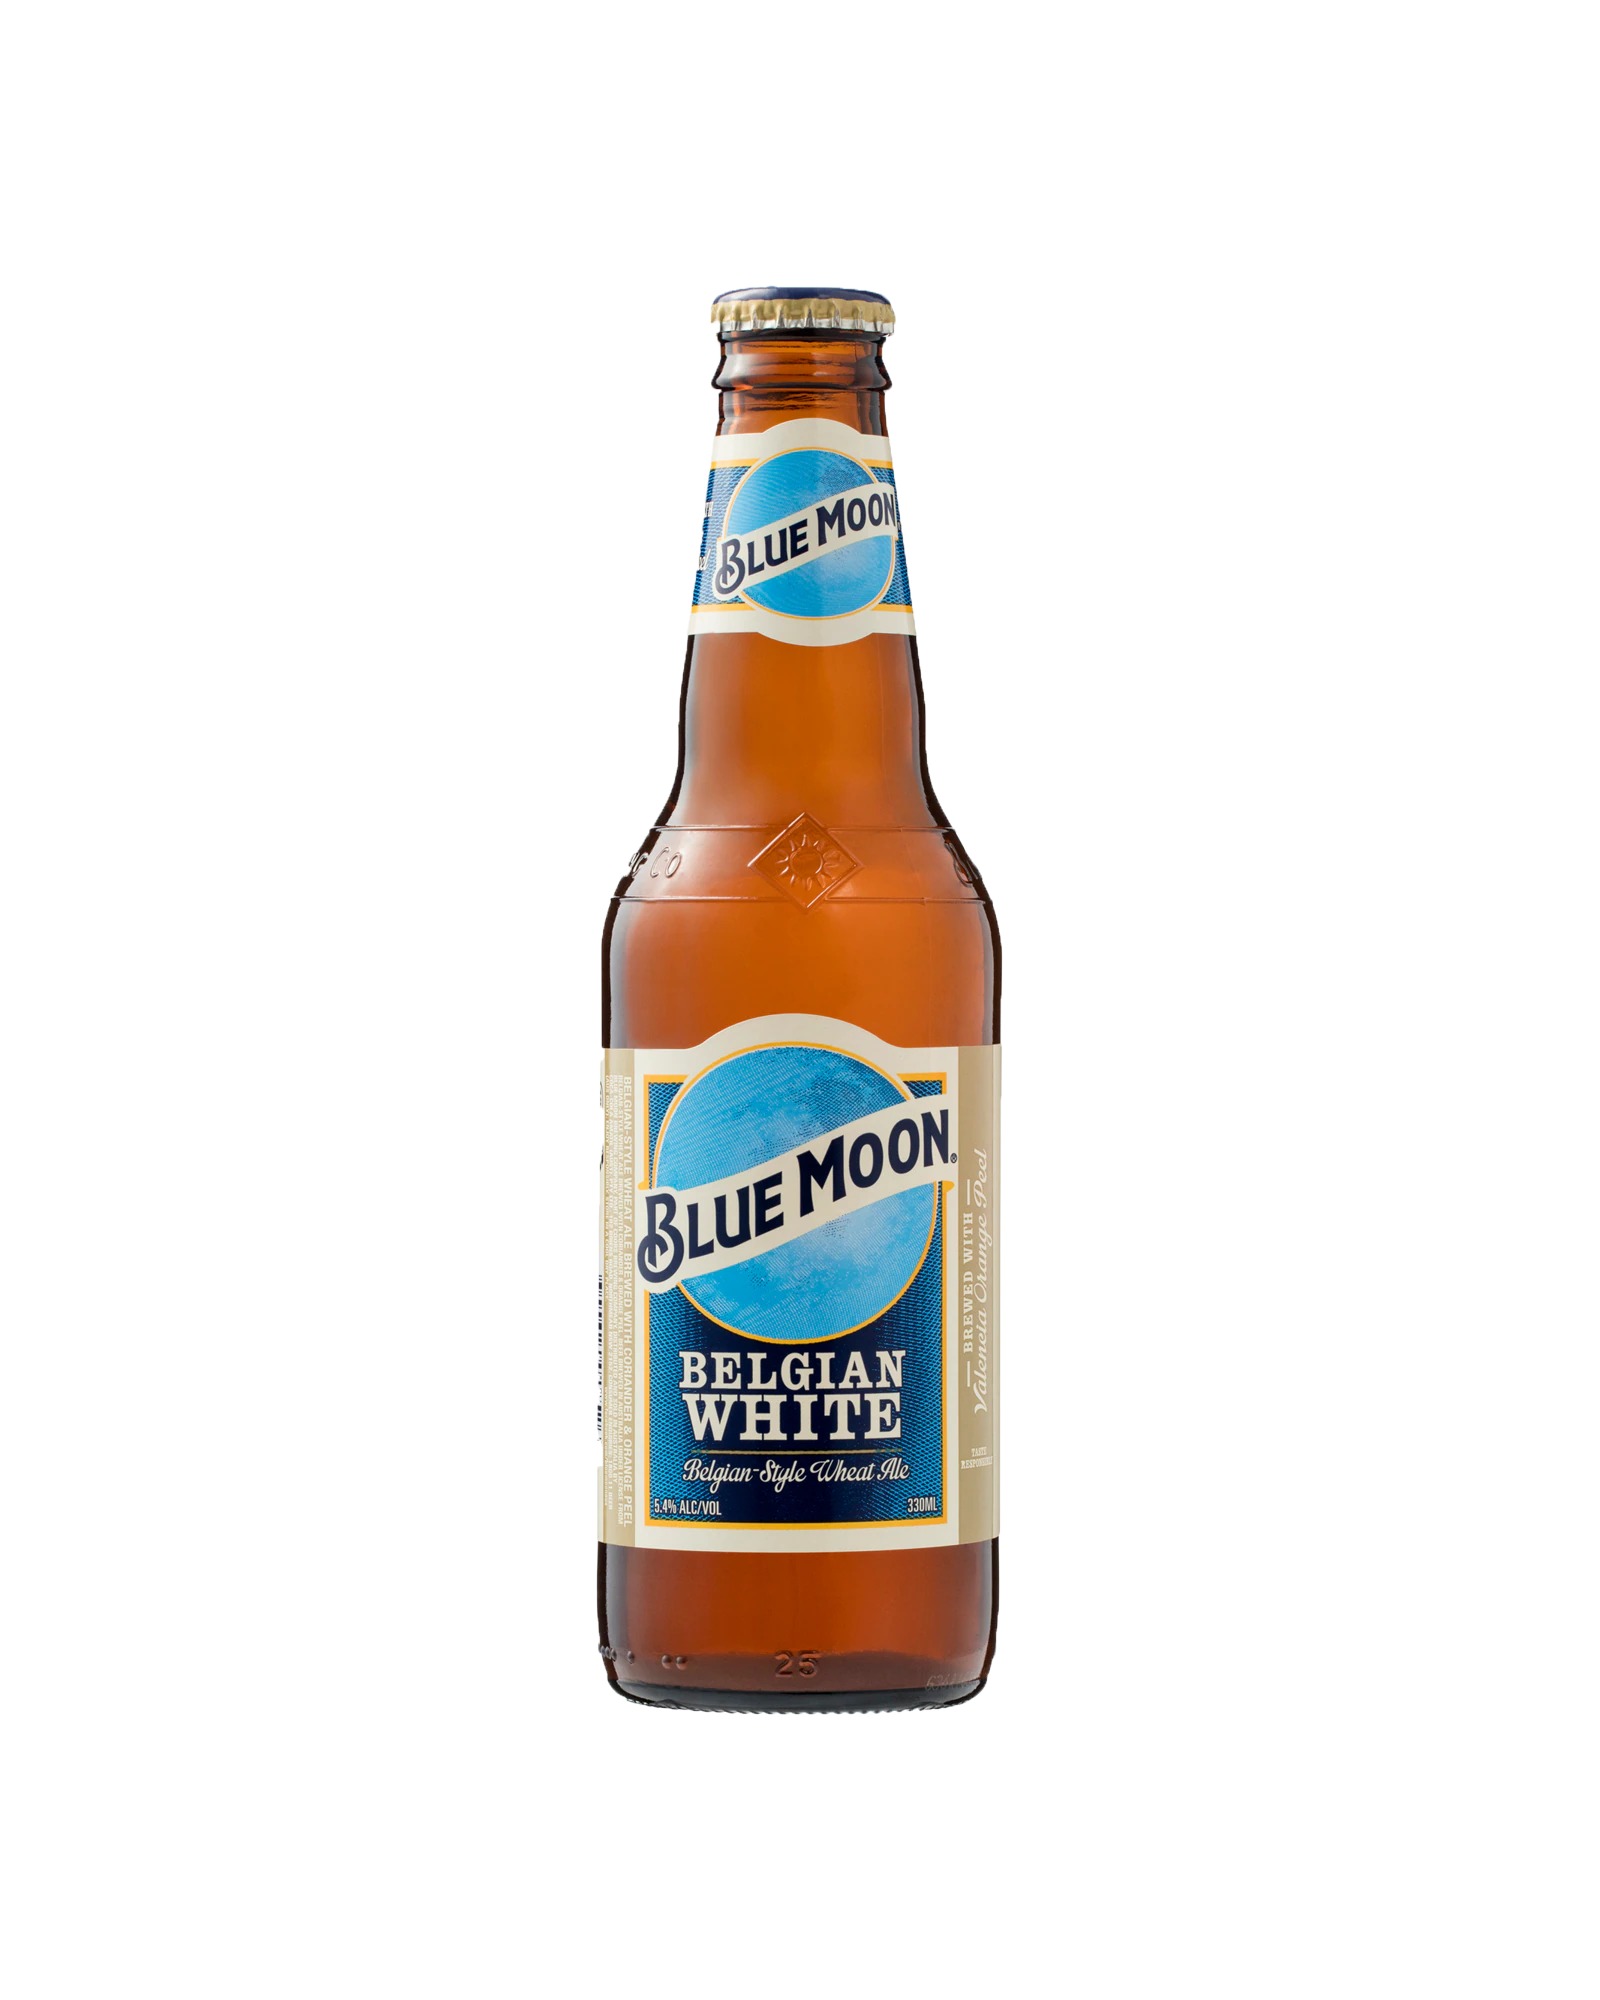 BLUE MOON BTL 5.4% 330ML